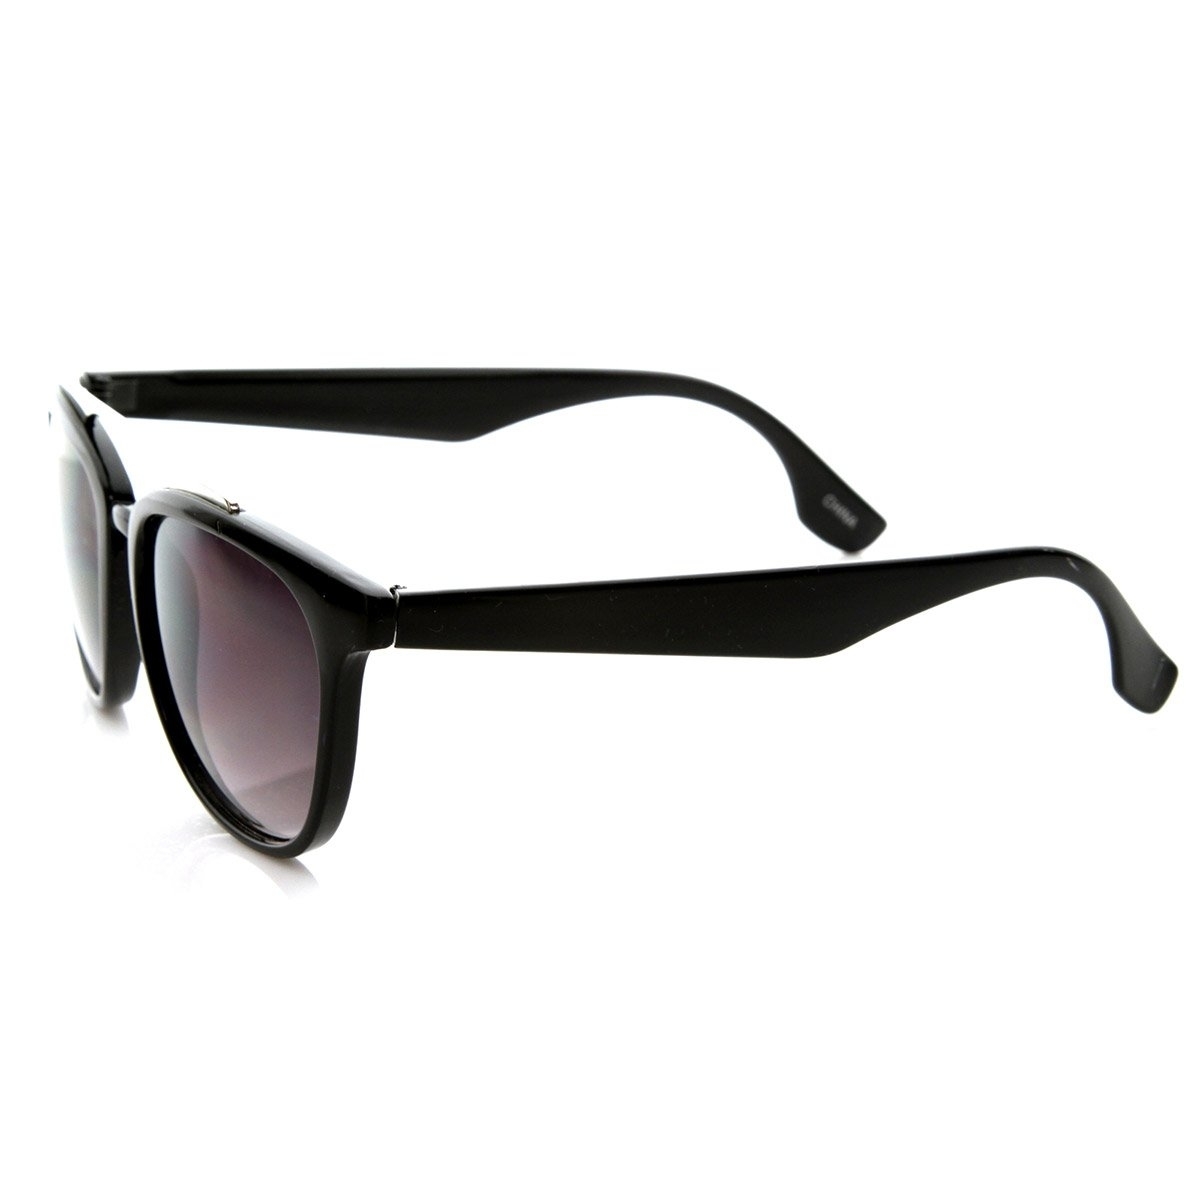 Vintage Inspired Fashion Horn Rimmed Horn Rimmed Sunglasses With Metal Crossbar - Black Lavender-Lens